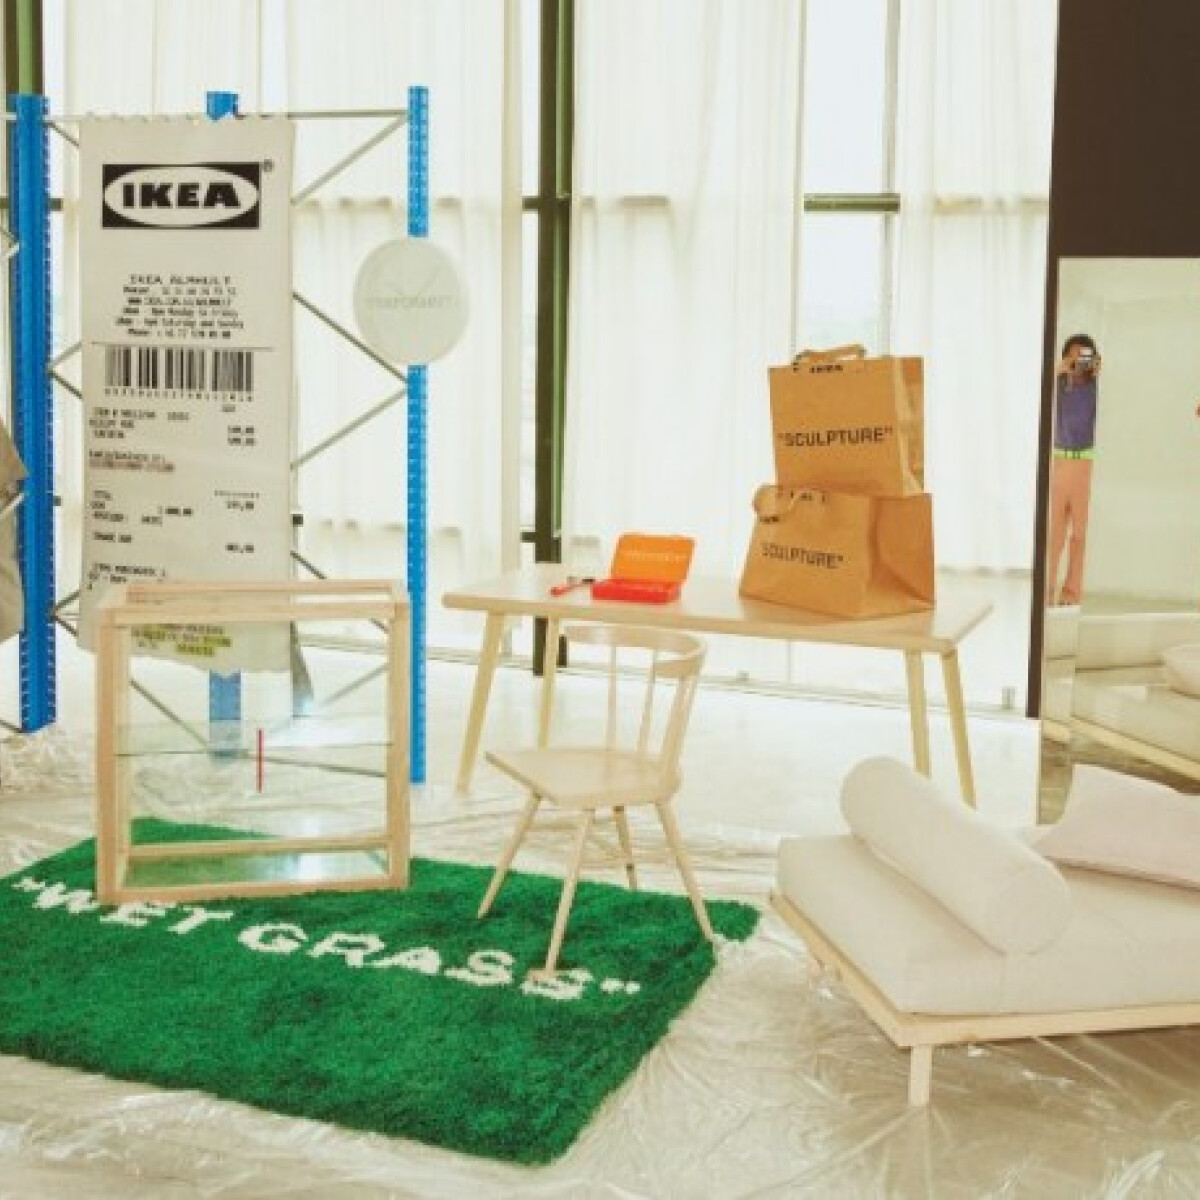 Elképesztően menő minikollekciót dob piacra az IKEA